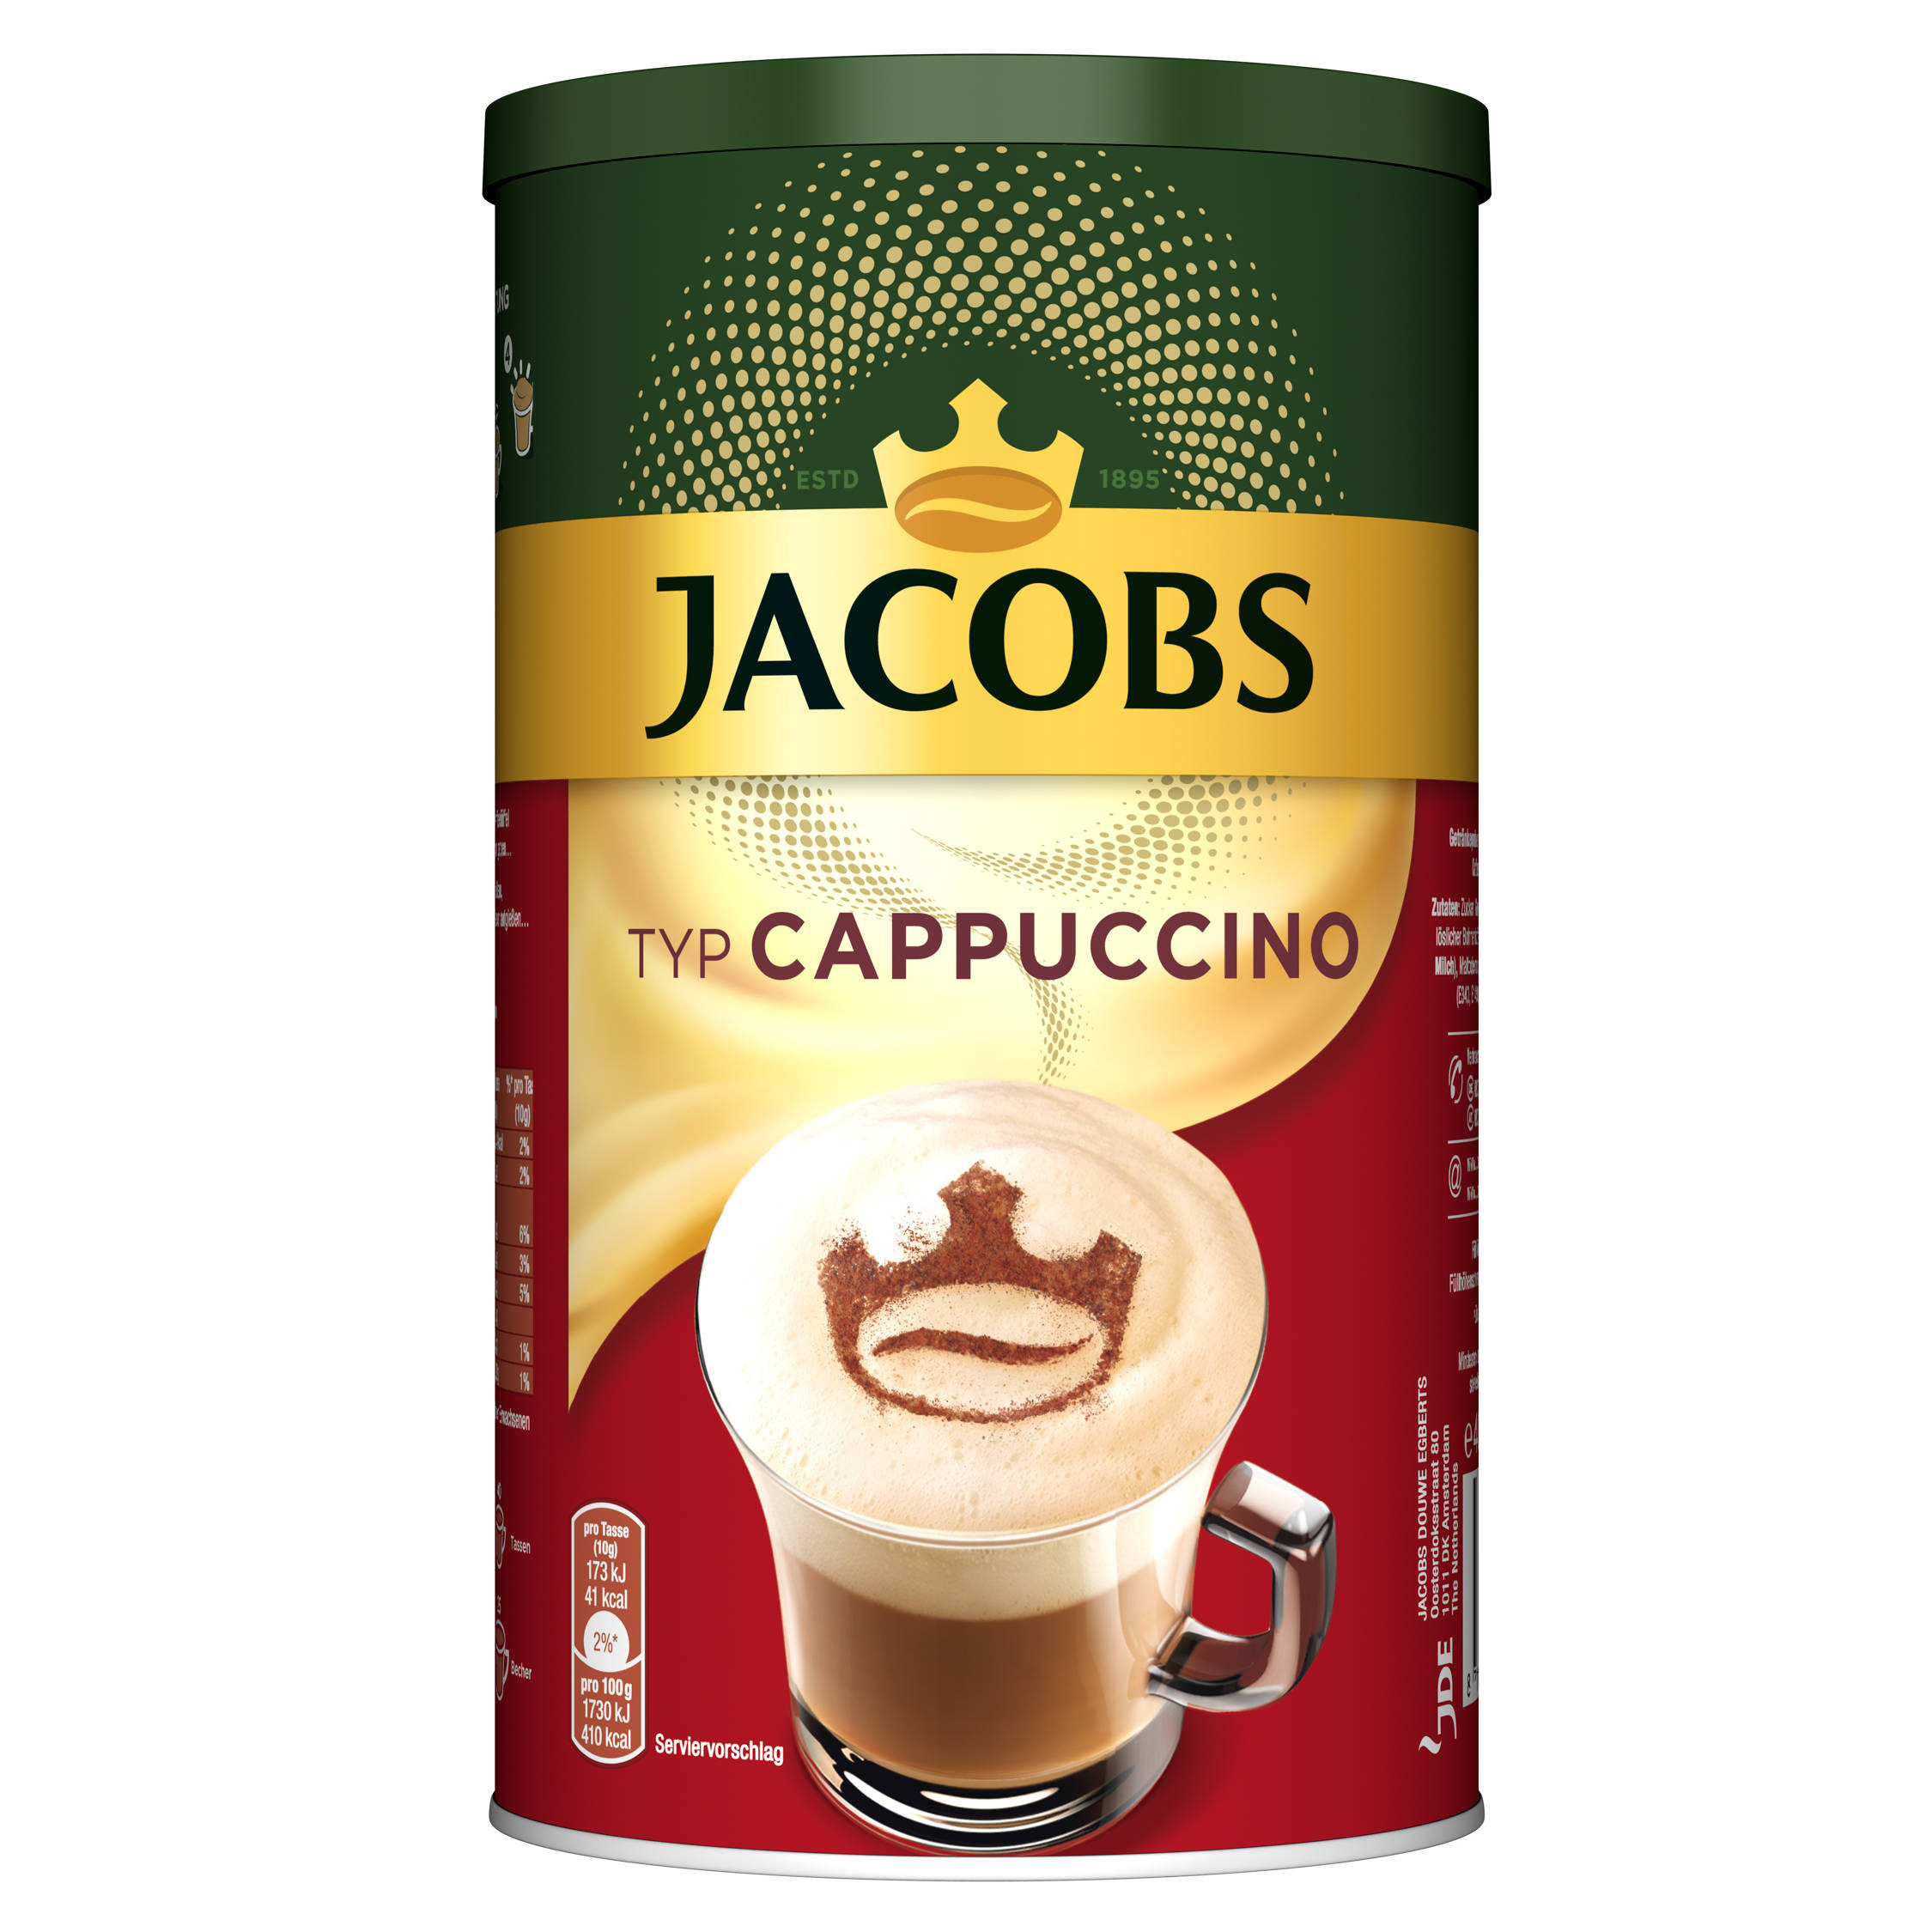 JACOBS Typ Cappuccino 6 x 400 (In Instantkaffee Wasser g heißem Dosen auflösen)